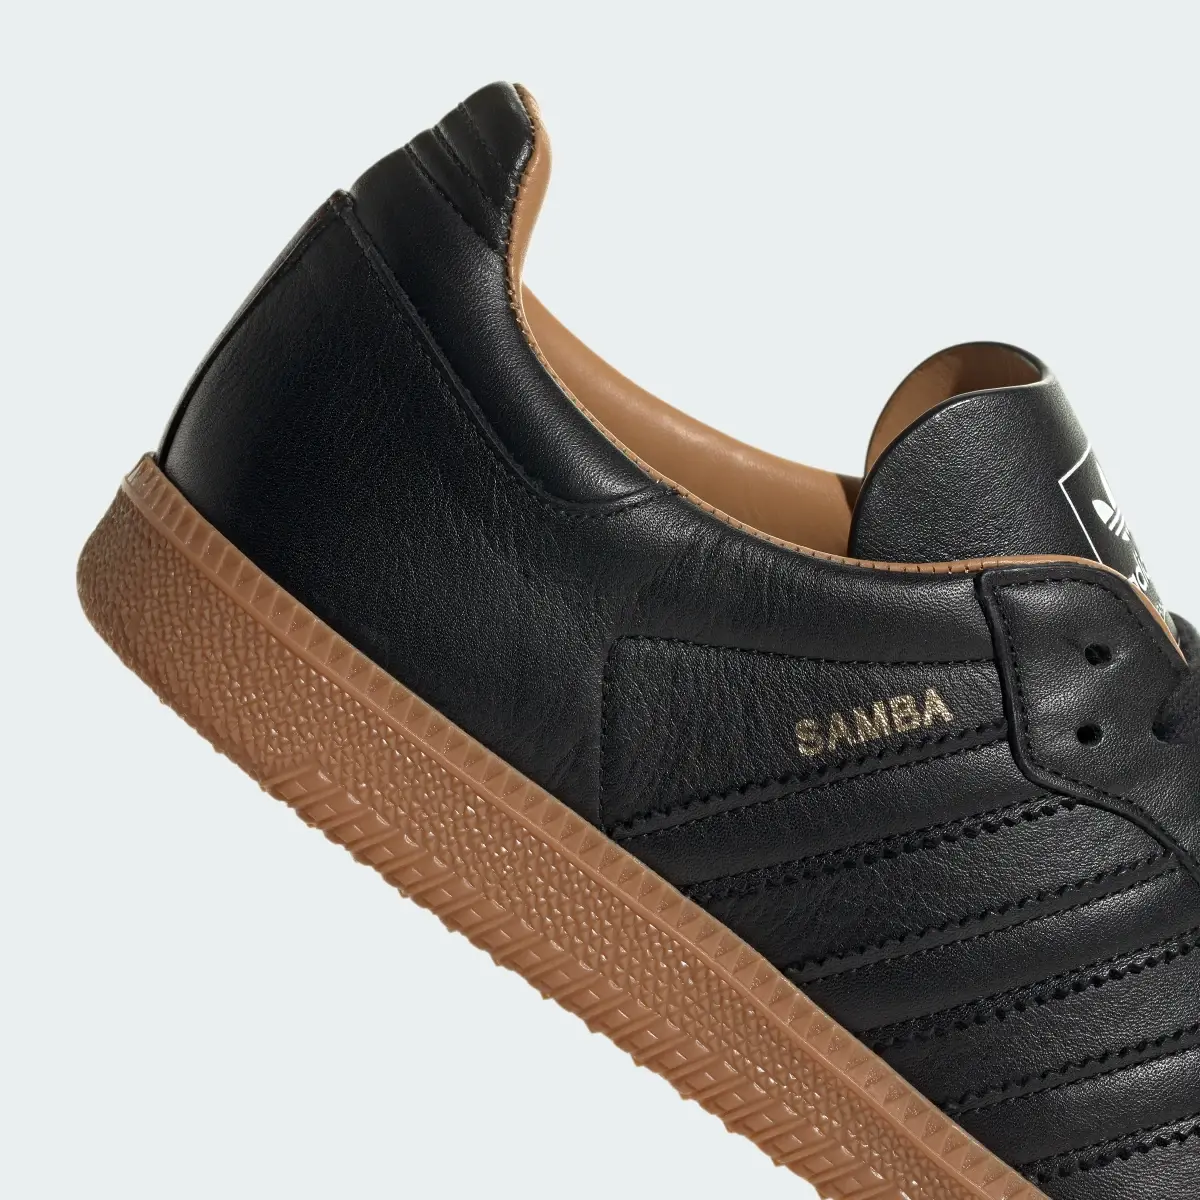 Adidas Scarpe Samba OG Made In Italy. 3